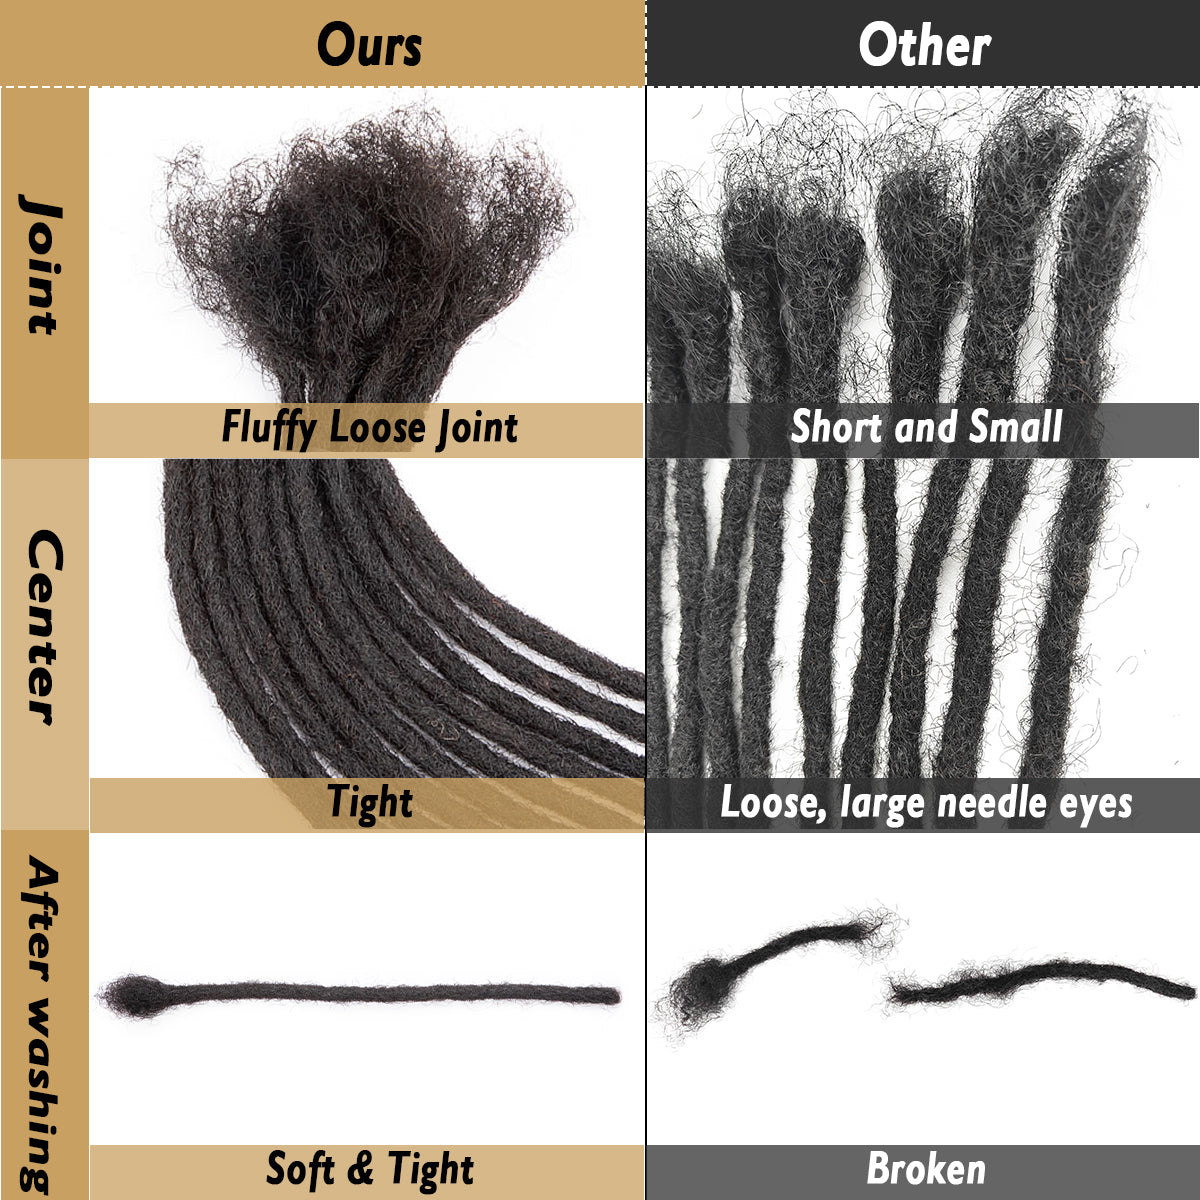 4C Extensions de dreadlocks pré-colorées Cheveux humains 8 pouces 0.4-0.6 Extensions de Locs faites à la main Dreads colorées courtes permanentes